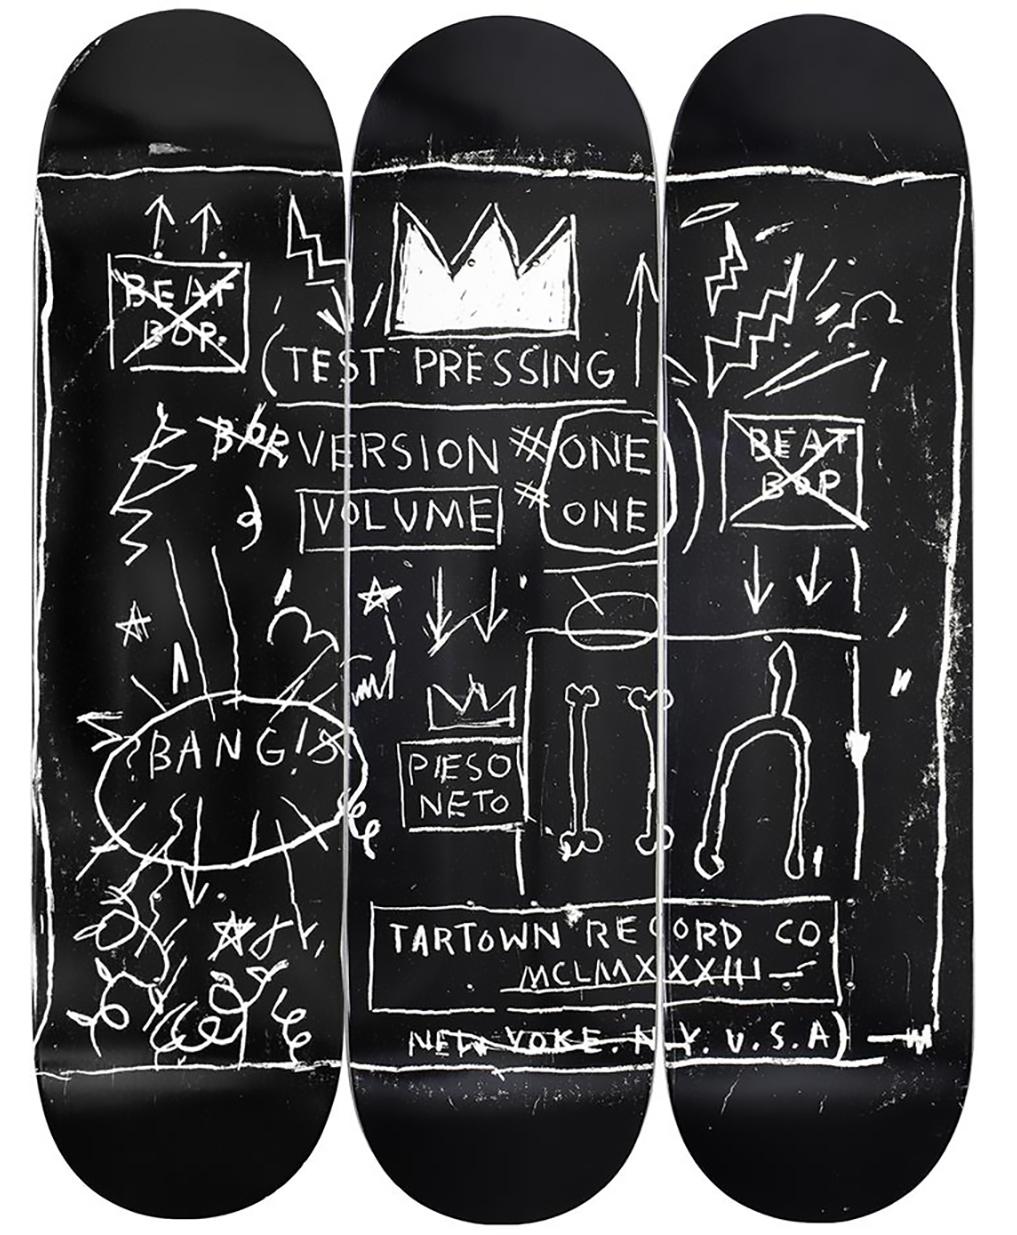 Basquiat Beat Bop Skateboard Decks (set of 3)  - Sculpture by after Jean-Michel Basquiat